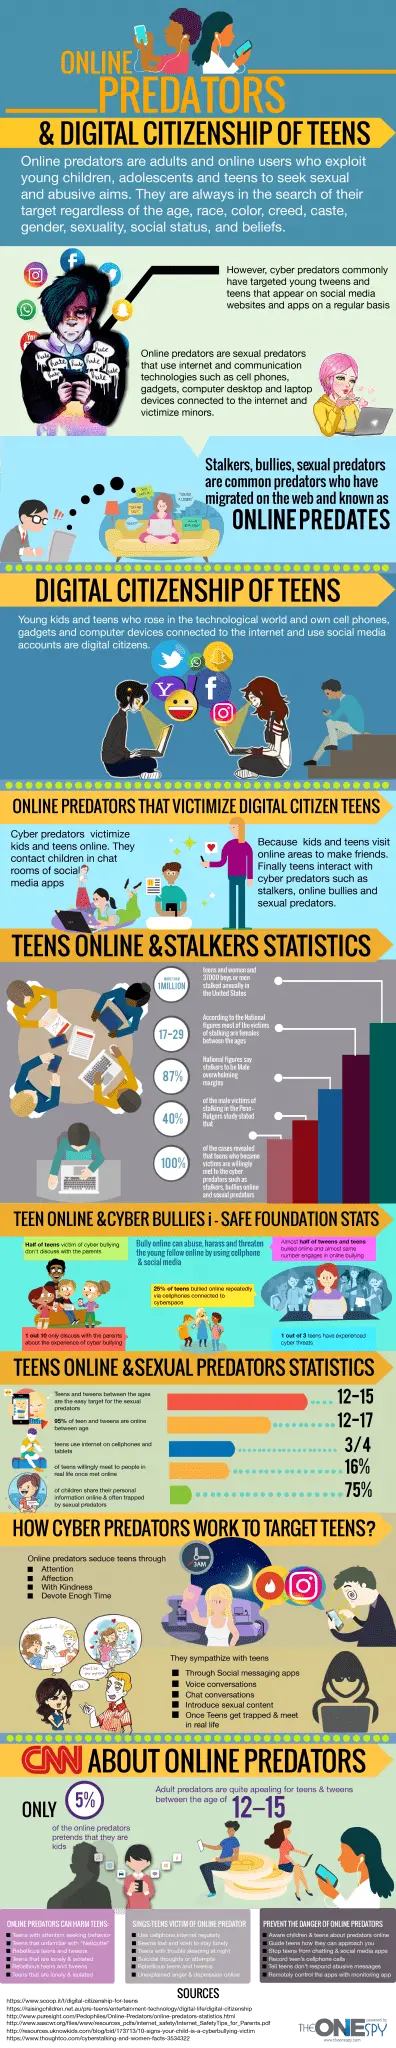 infografia cidadania digital de adolescentes e predadores cibernéticos